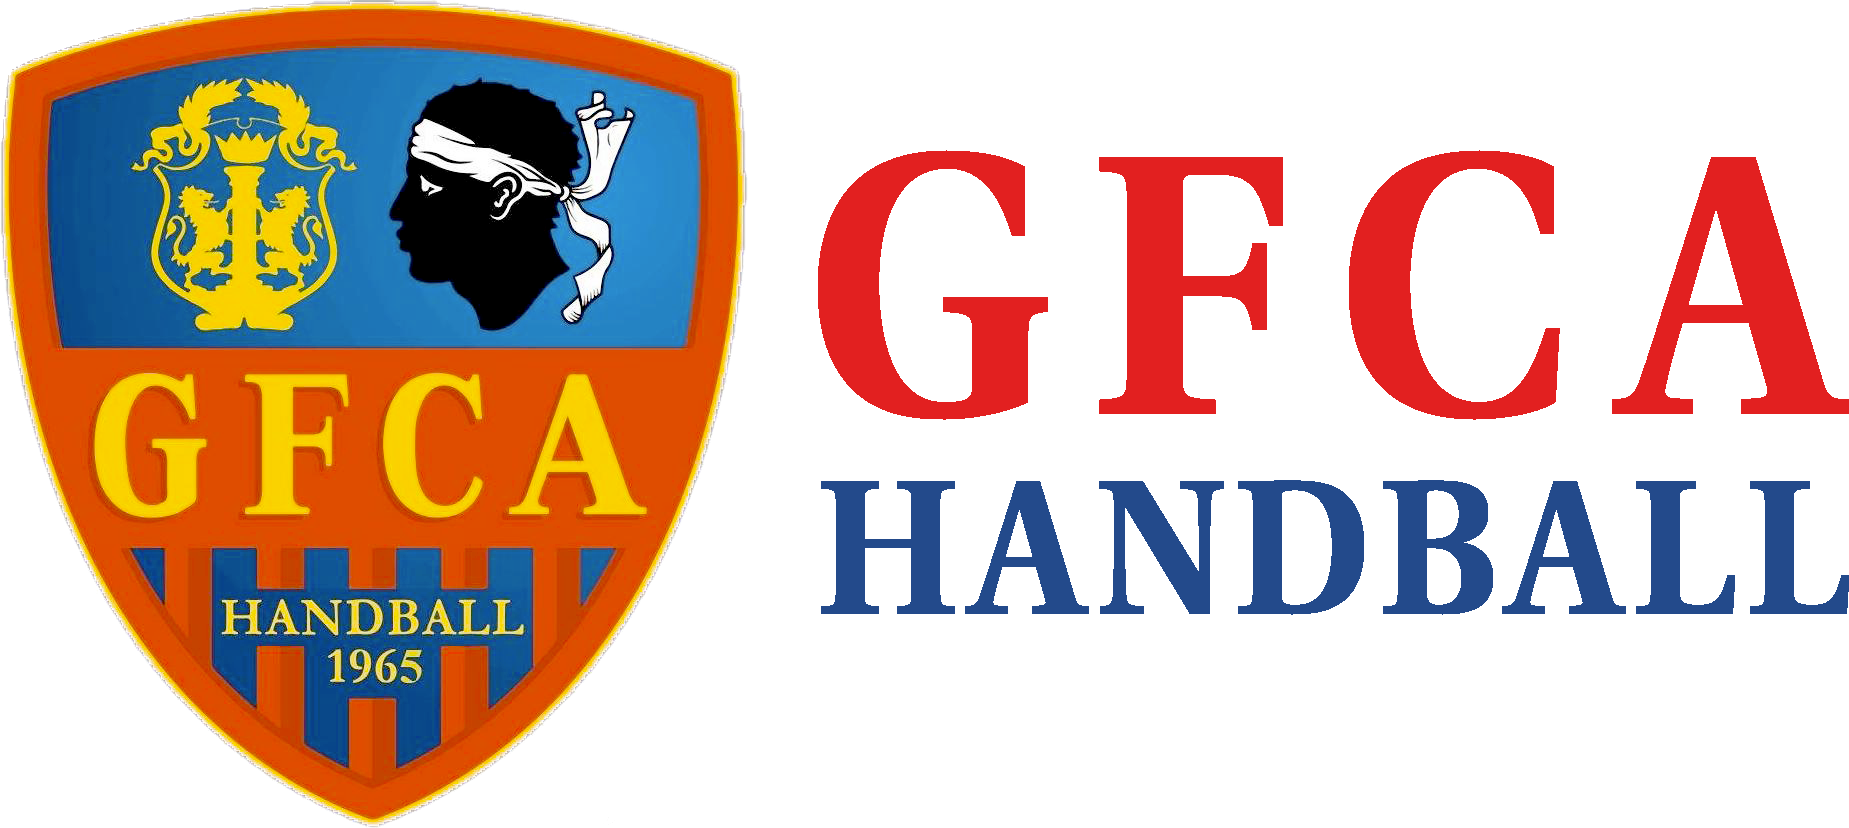 GFCA Handball